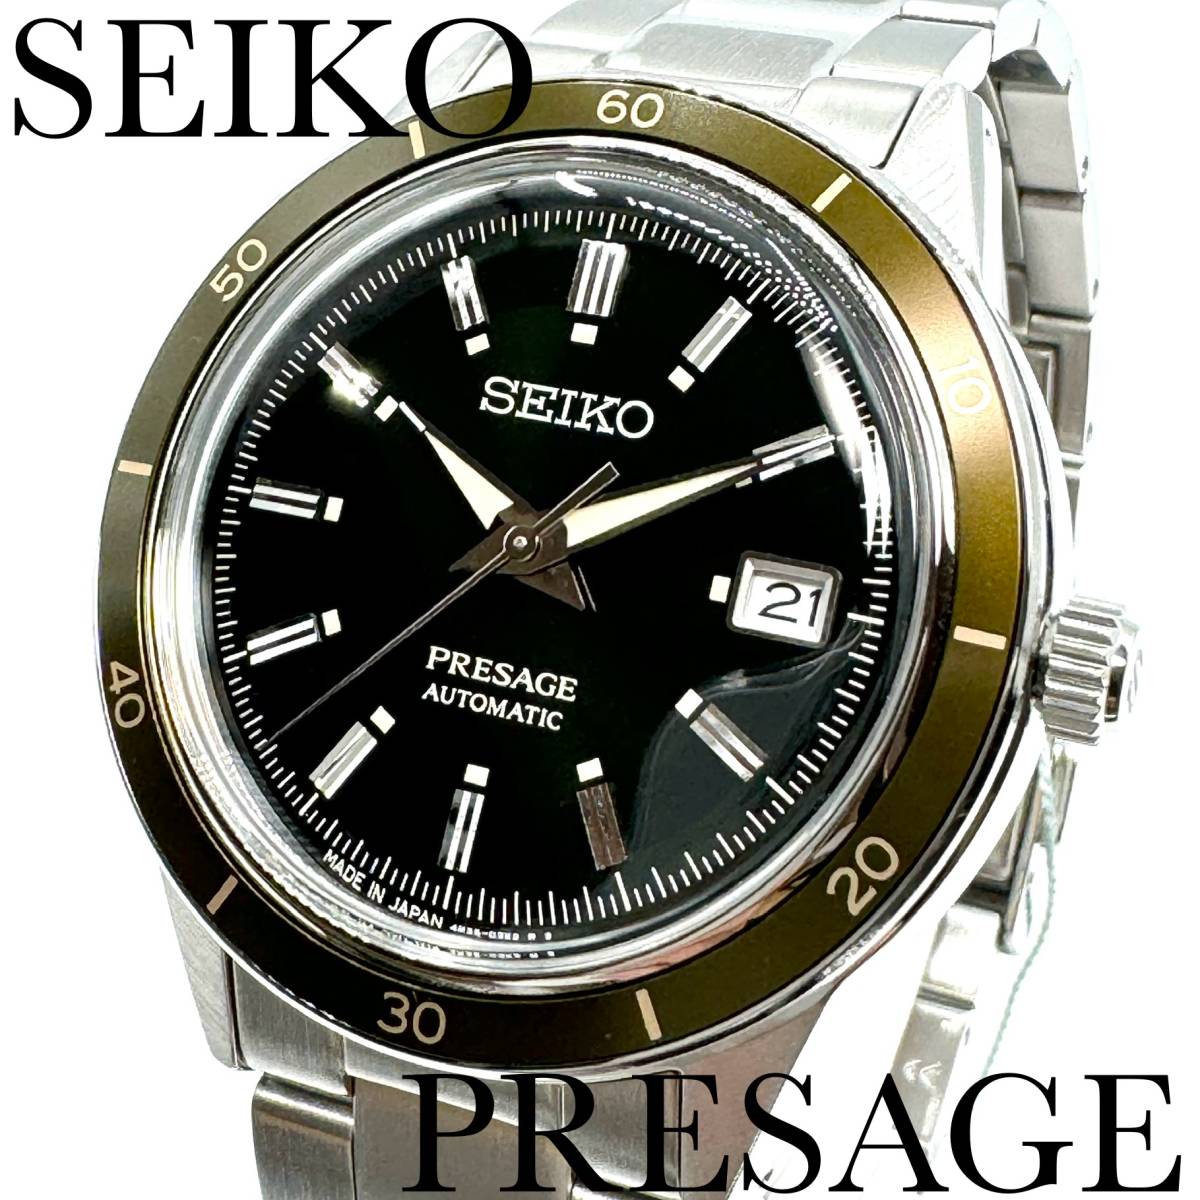 新品正規品『SEIKO PRESAGE』セイコー プレザージュ ヴィンテージスタイル 自動巻き腕時計 メンズ SARY195【送料無料】_画像1